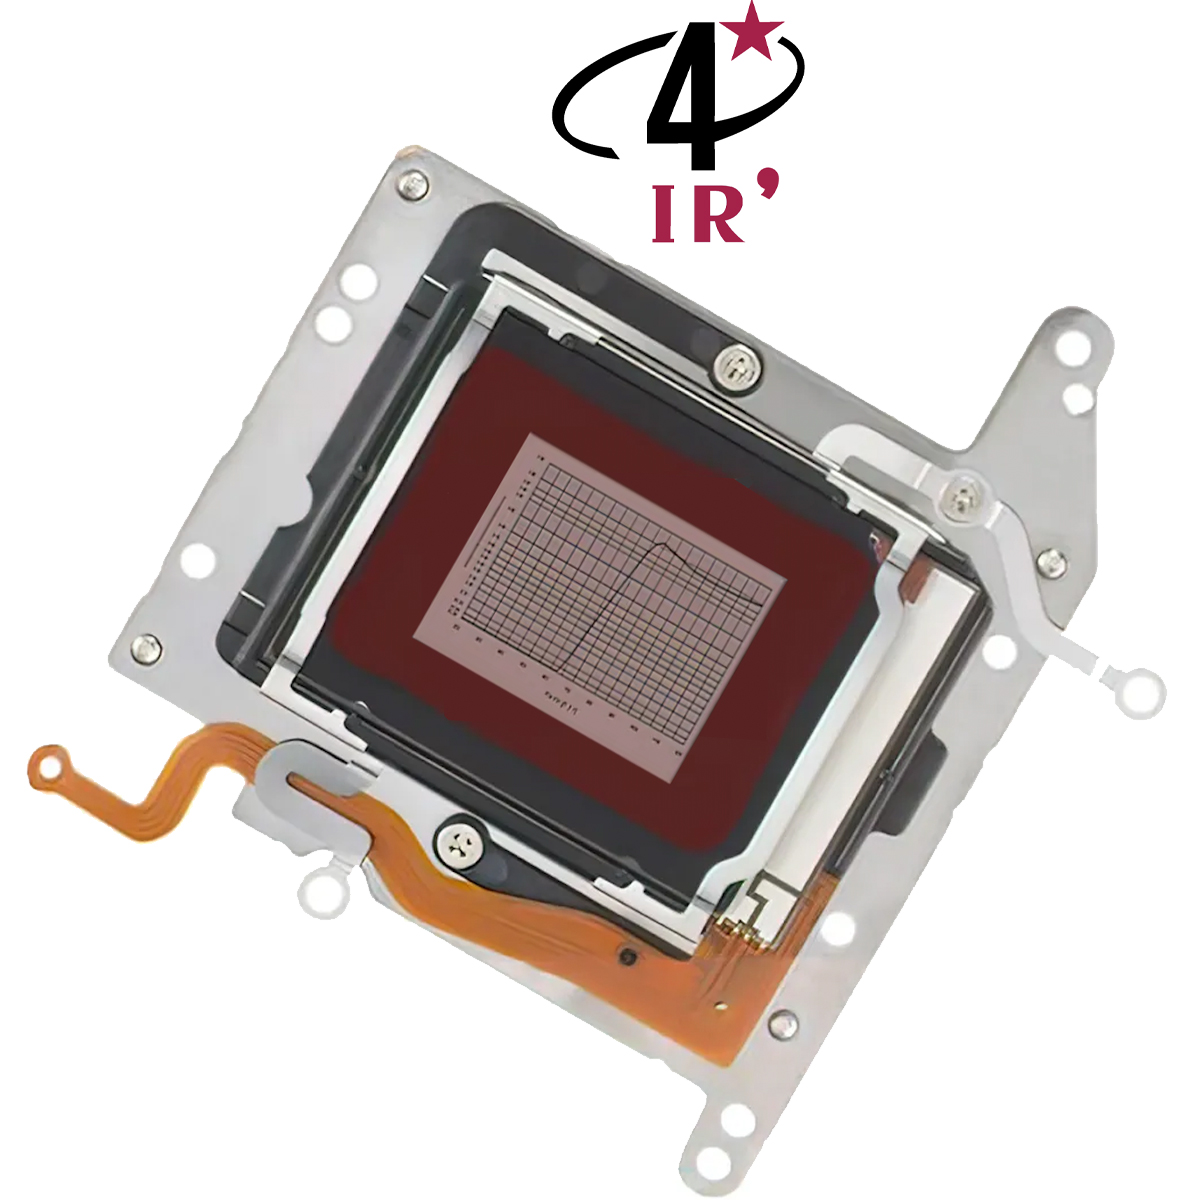 Défiltrage et refiltrage d'un APN avec filtre infrarouge IR RG715 ou RG830 Schott